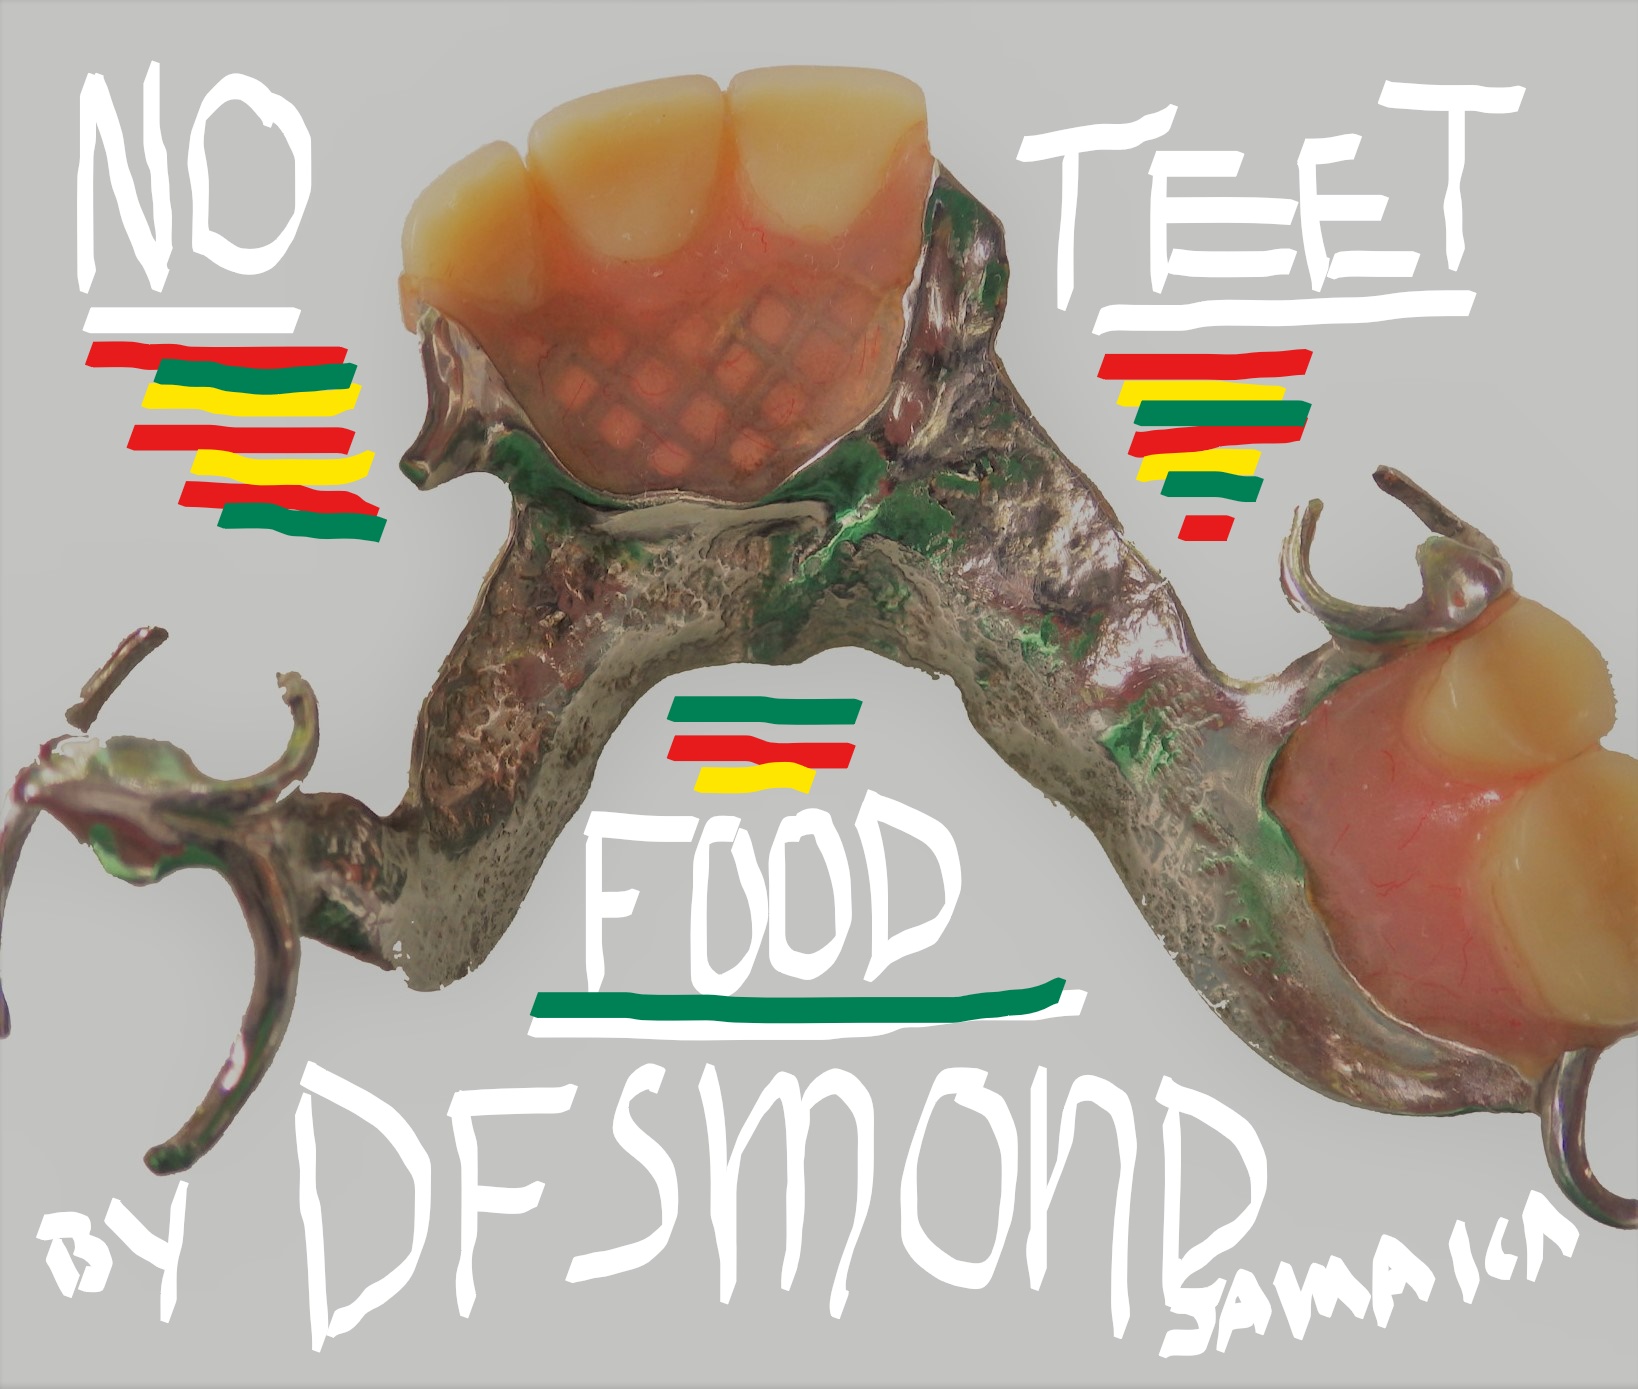 Art for No Teet Food (Dentures Gwana Way) by Jamaican Space Captain Desmond